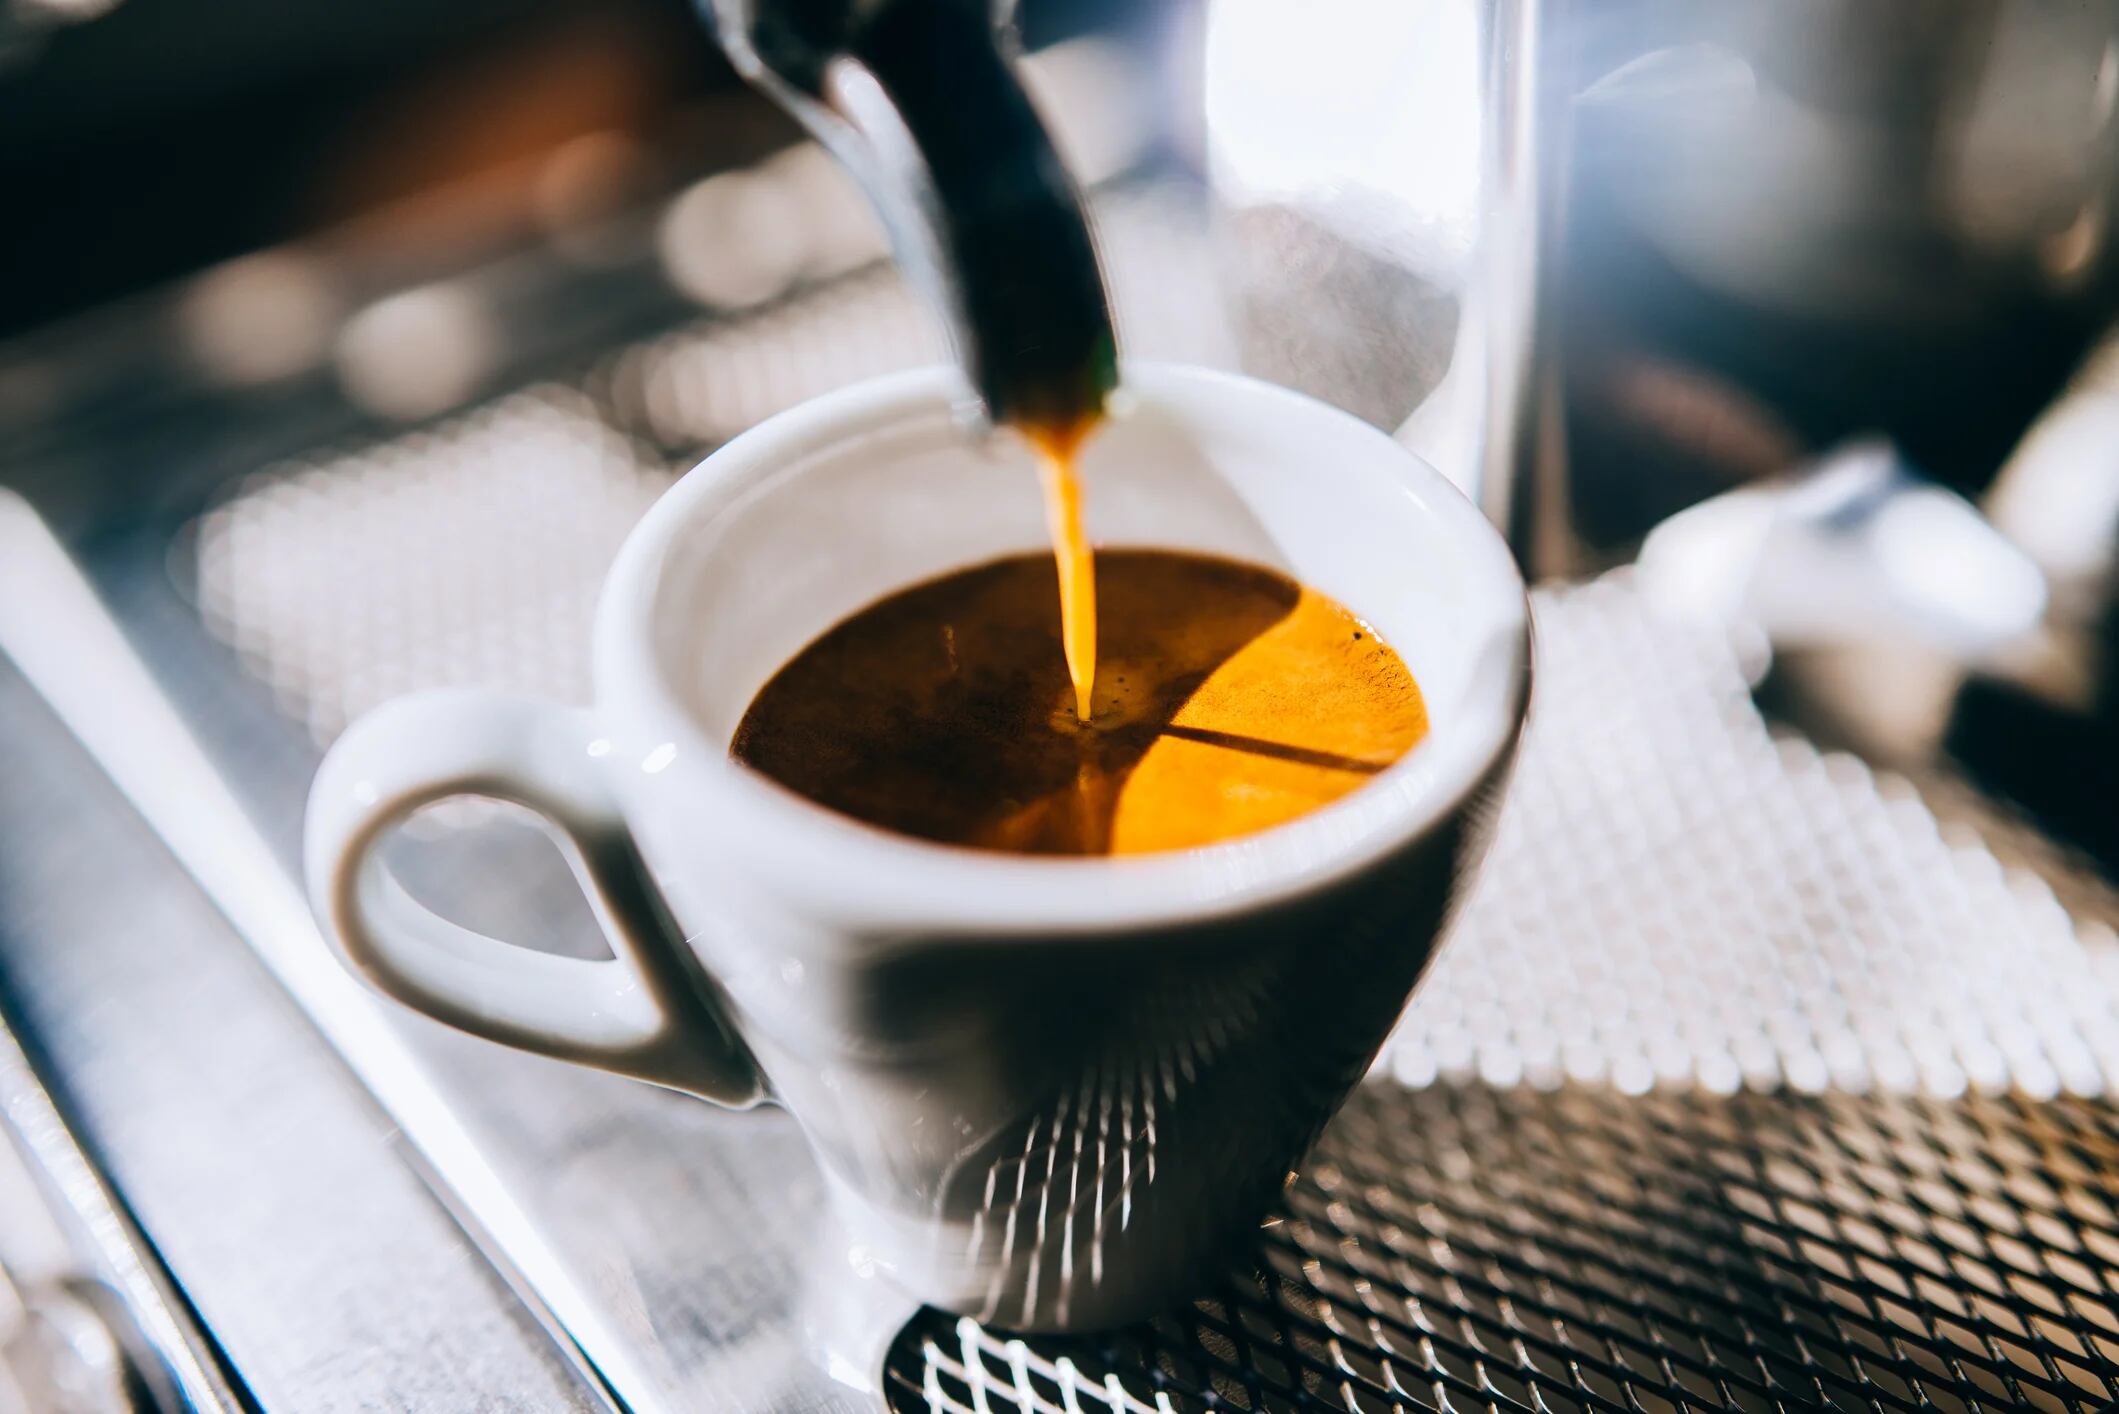 Los investigadores afirmaron que quienes consumen café tienen menos probabilidad de morir que quienes no lo hacen